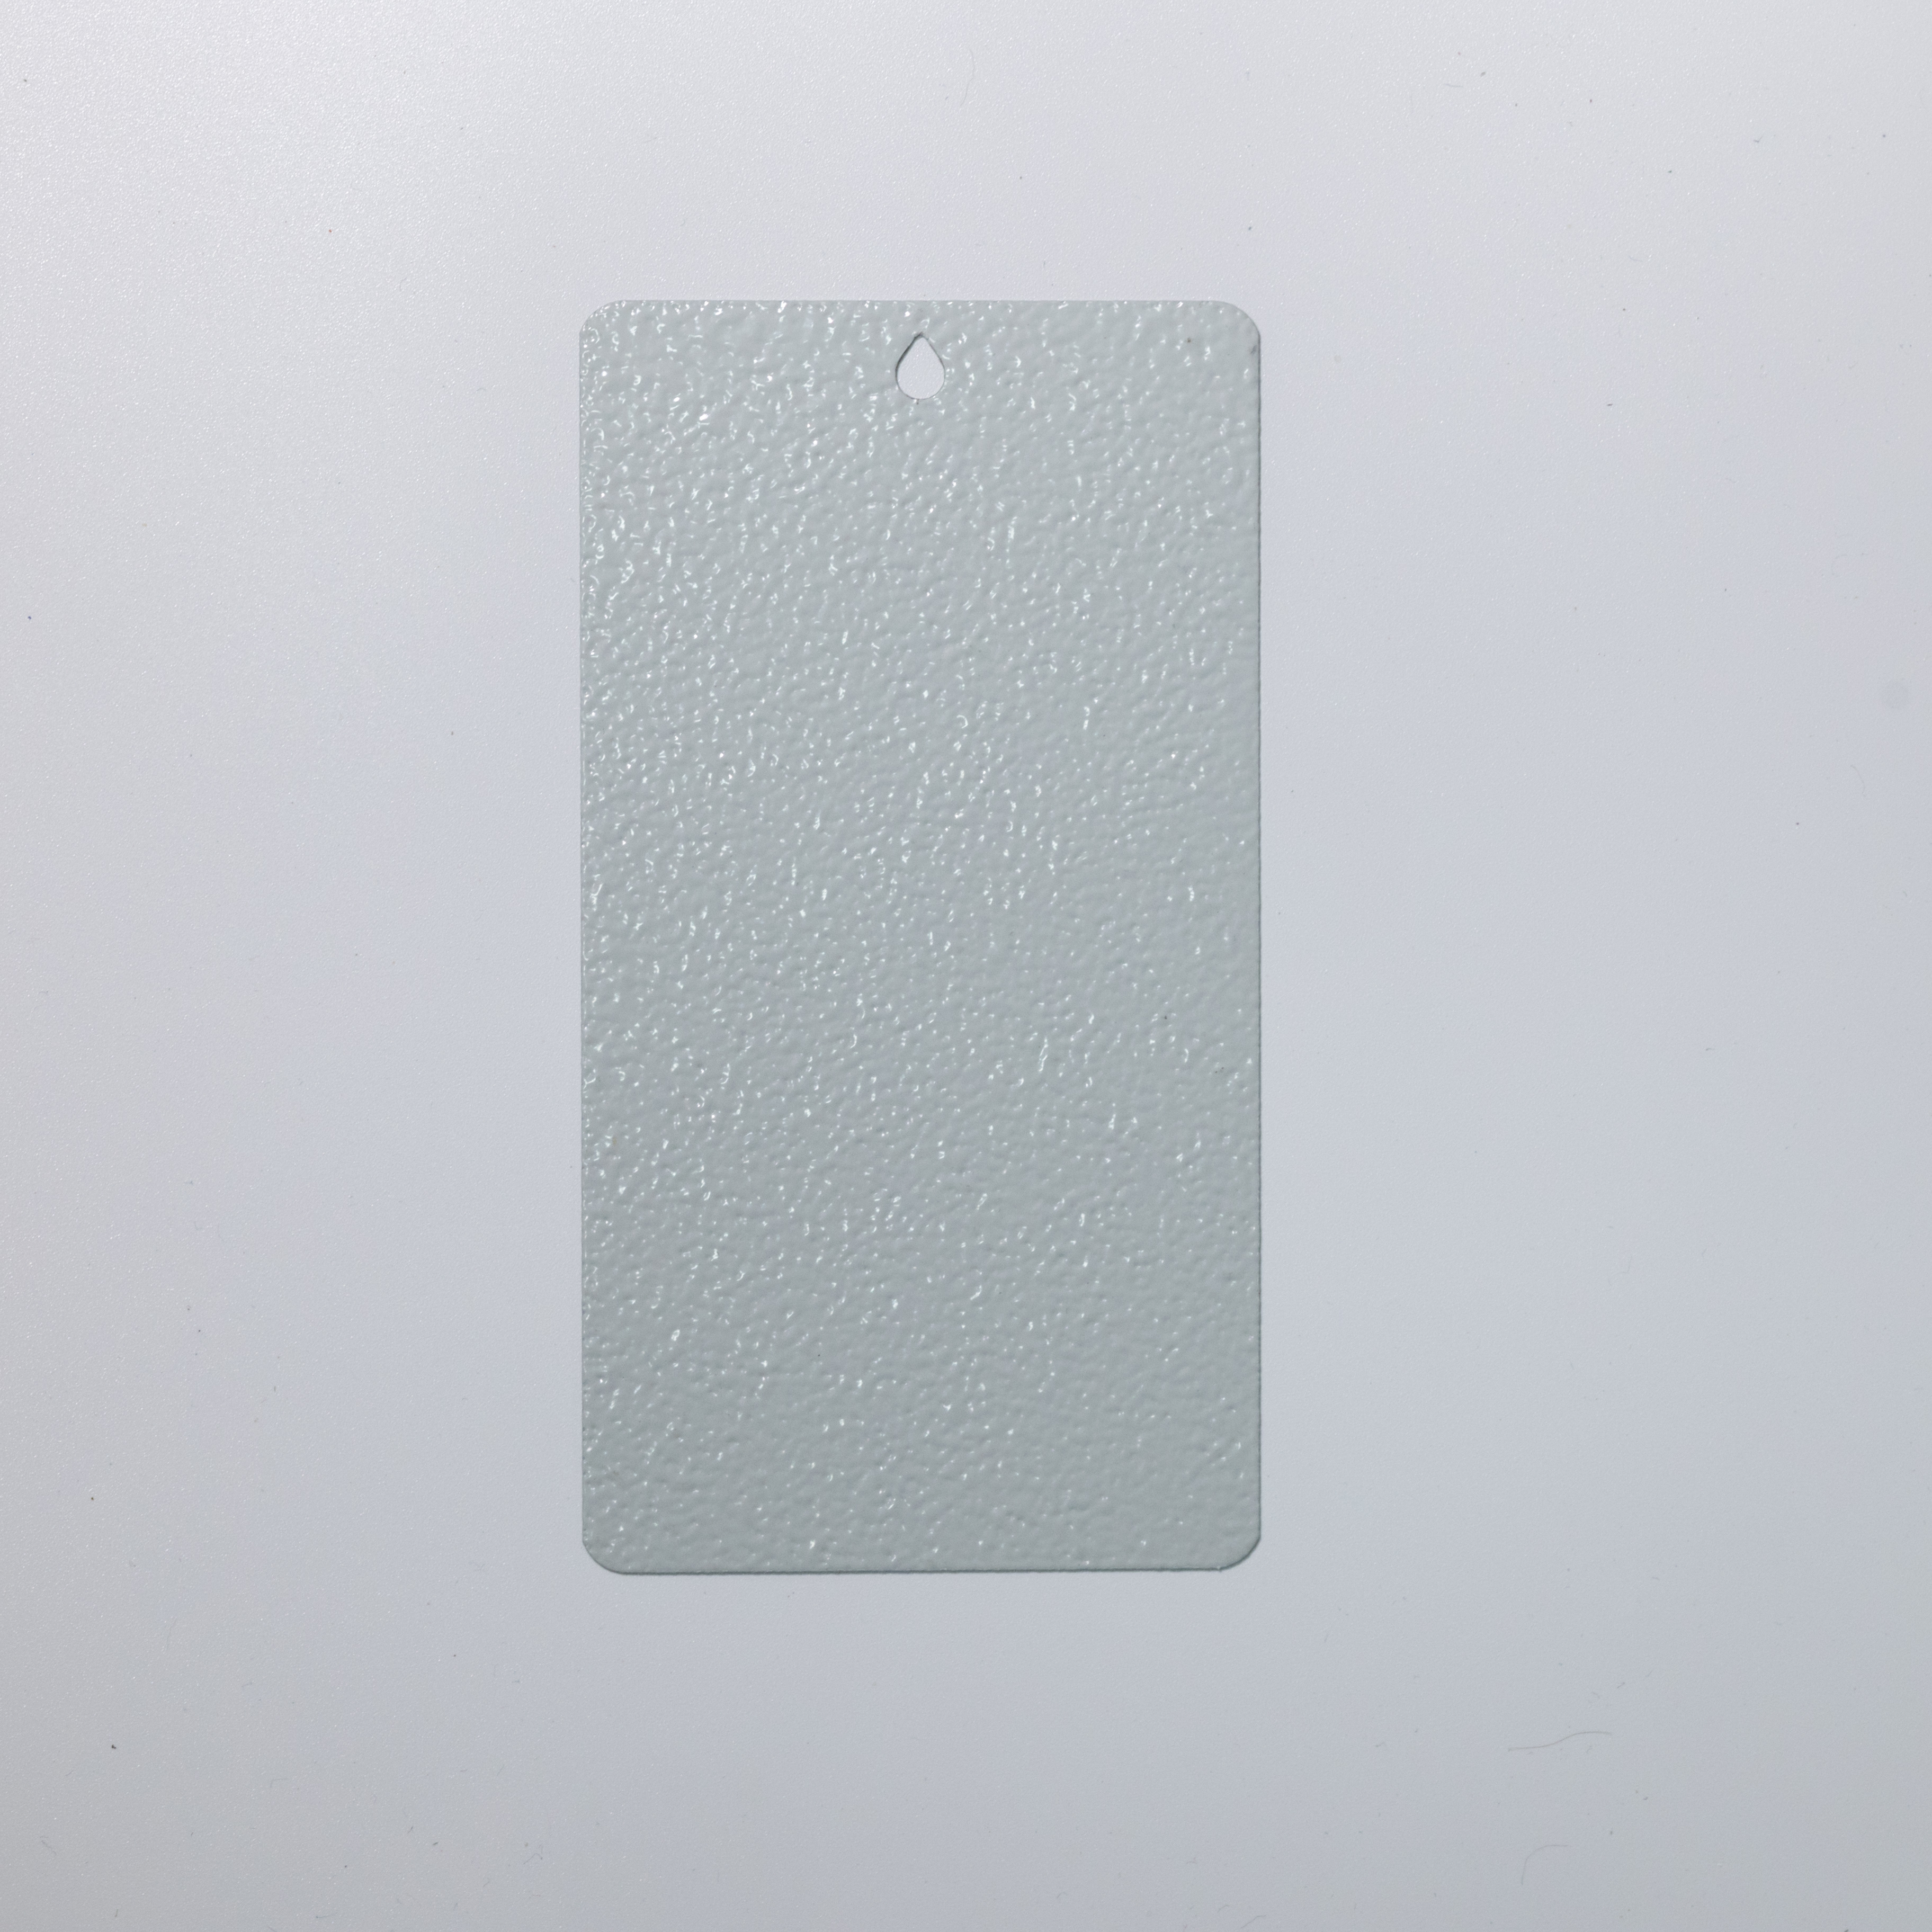 Color gris pastel Ral7035/Ral7042 Recubrimiento en polvo con textura de poliéster para tableros de distribución